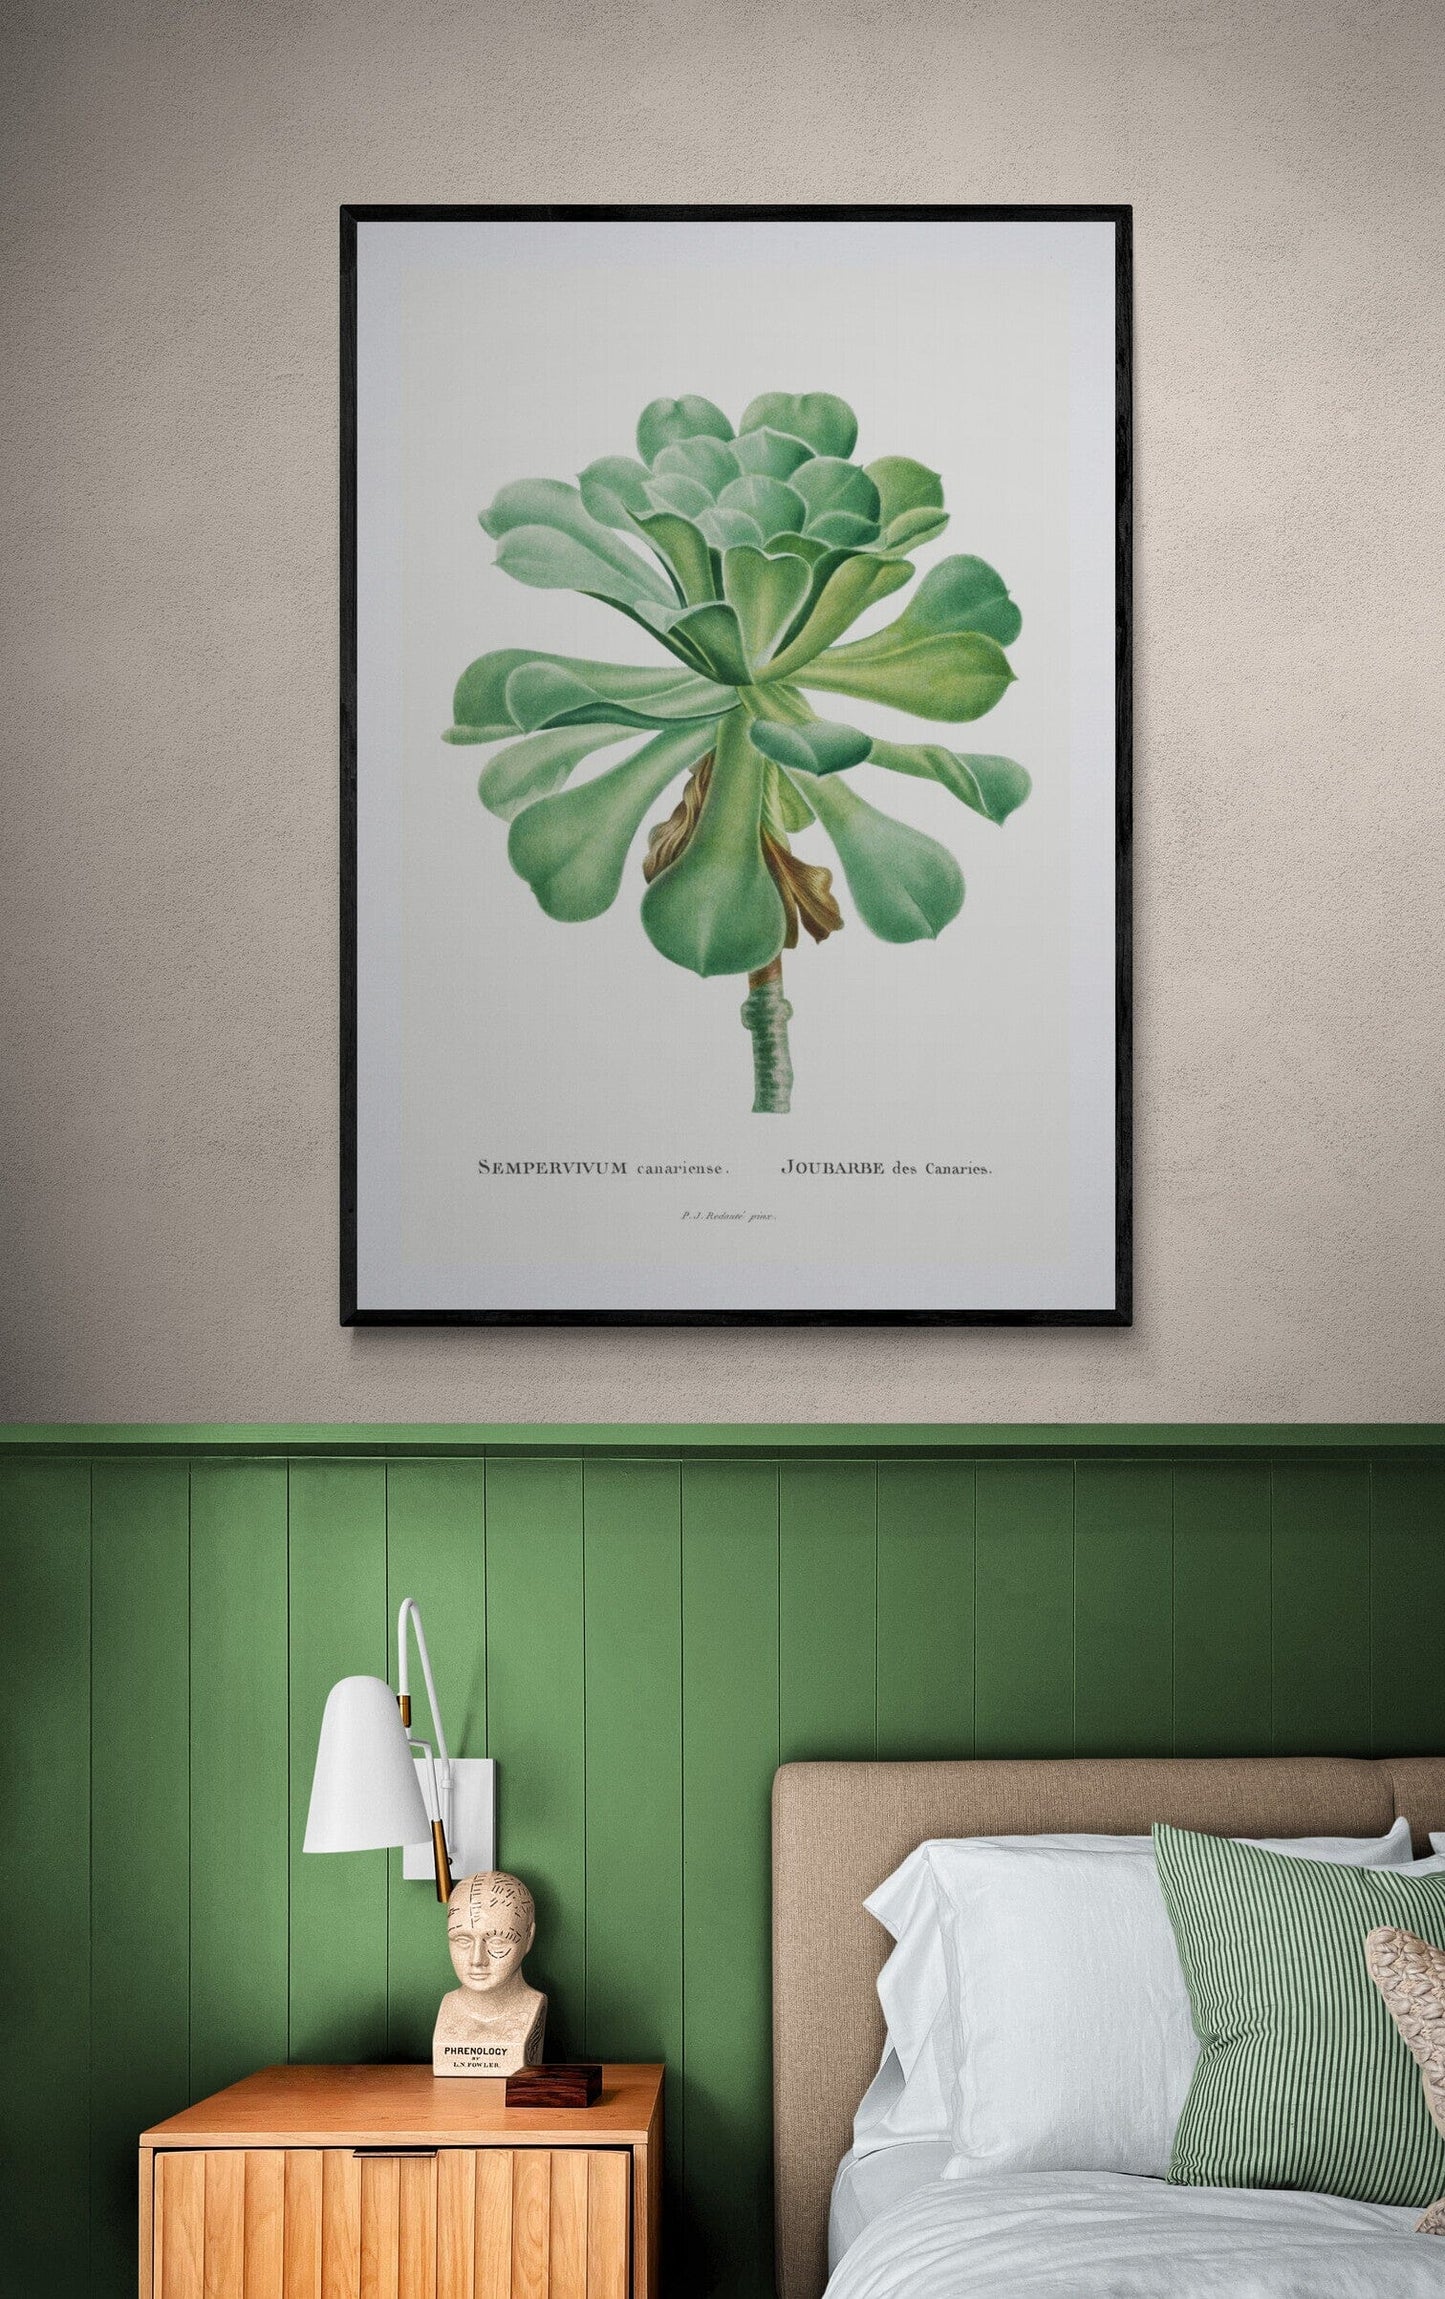 Sempervivum plant (1800s) | Pierre-Joseph Redoute Posters, Prints, & Visual Artwork The Trumpet Shop   